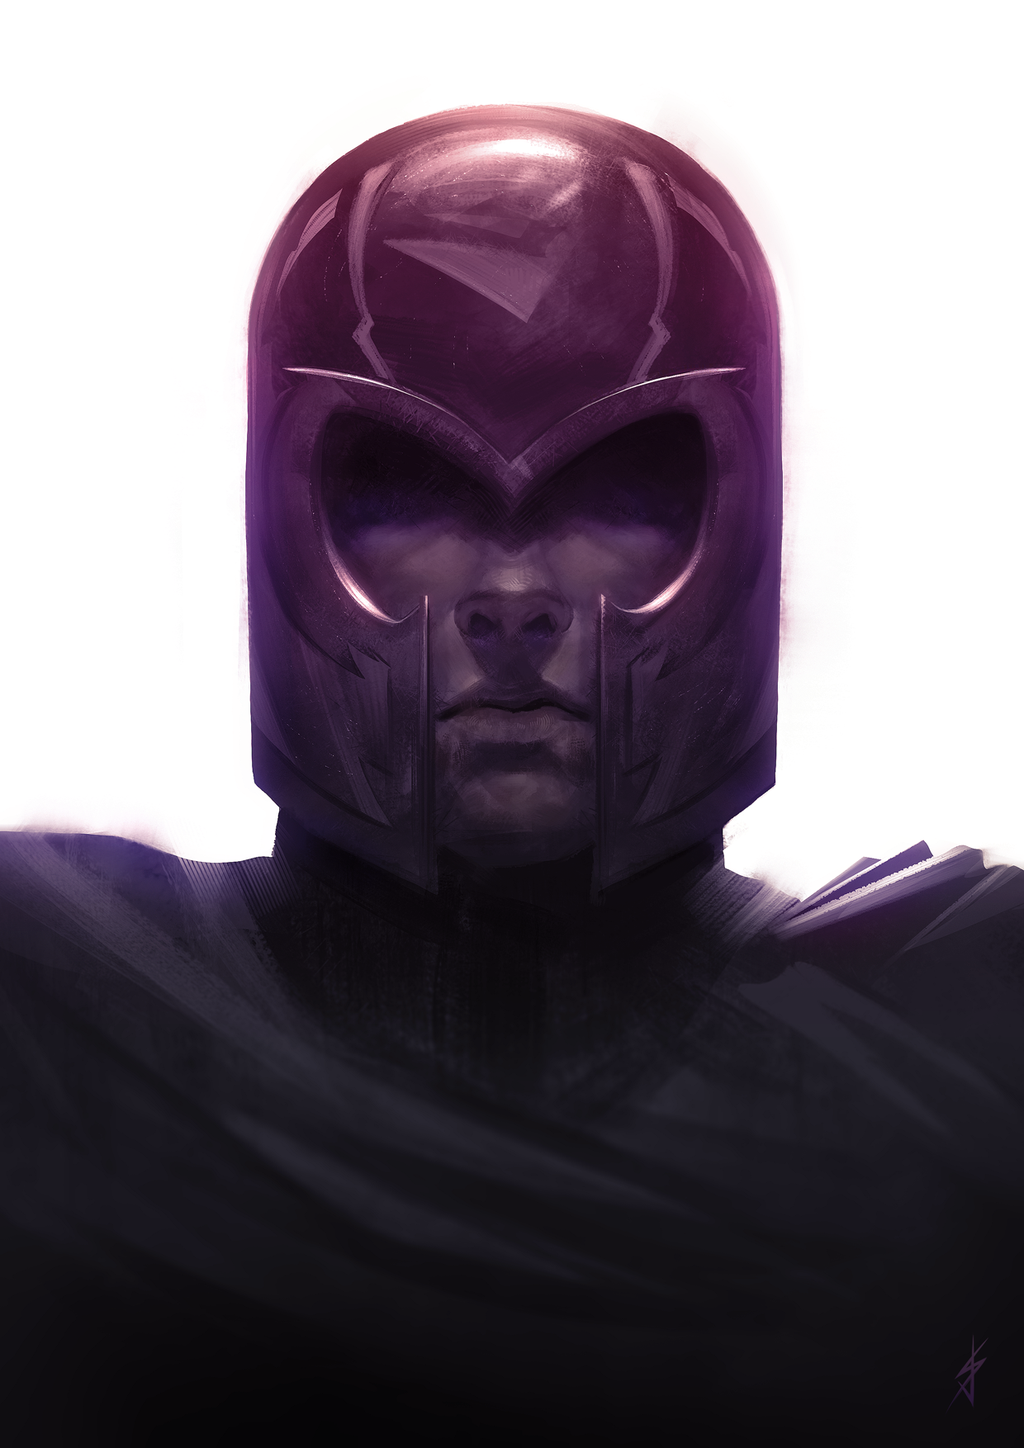 Magneto fan art